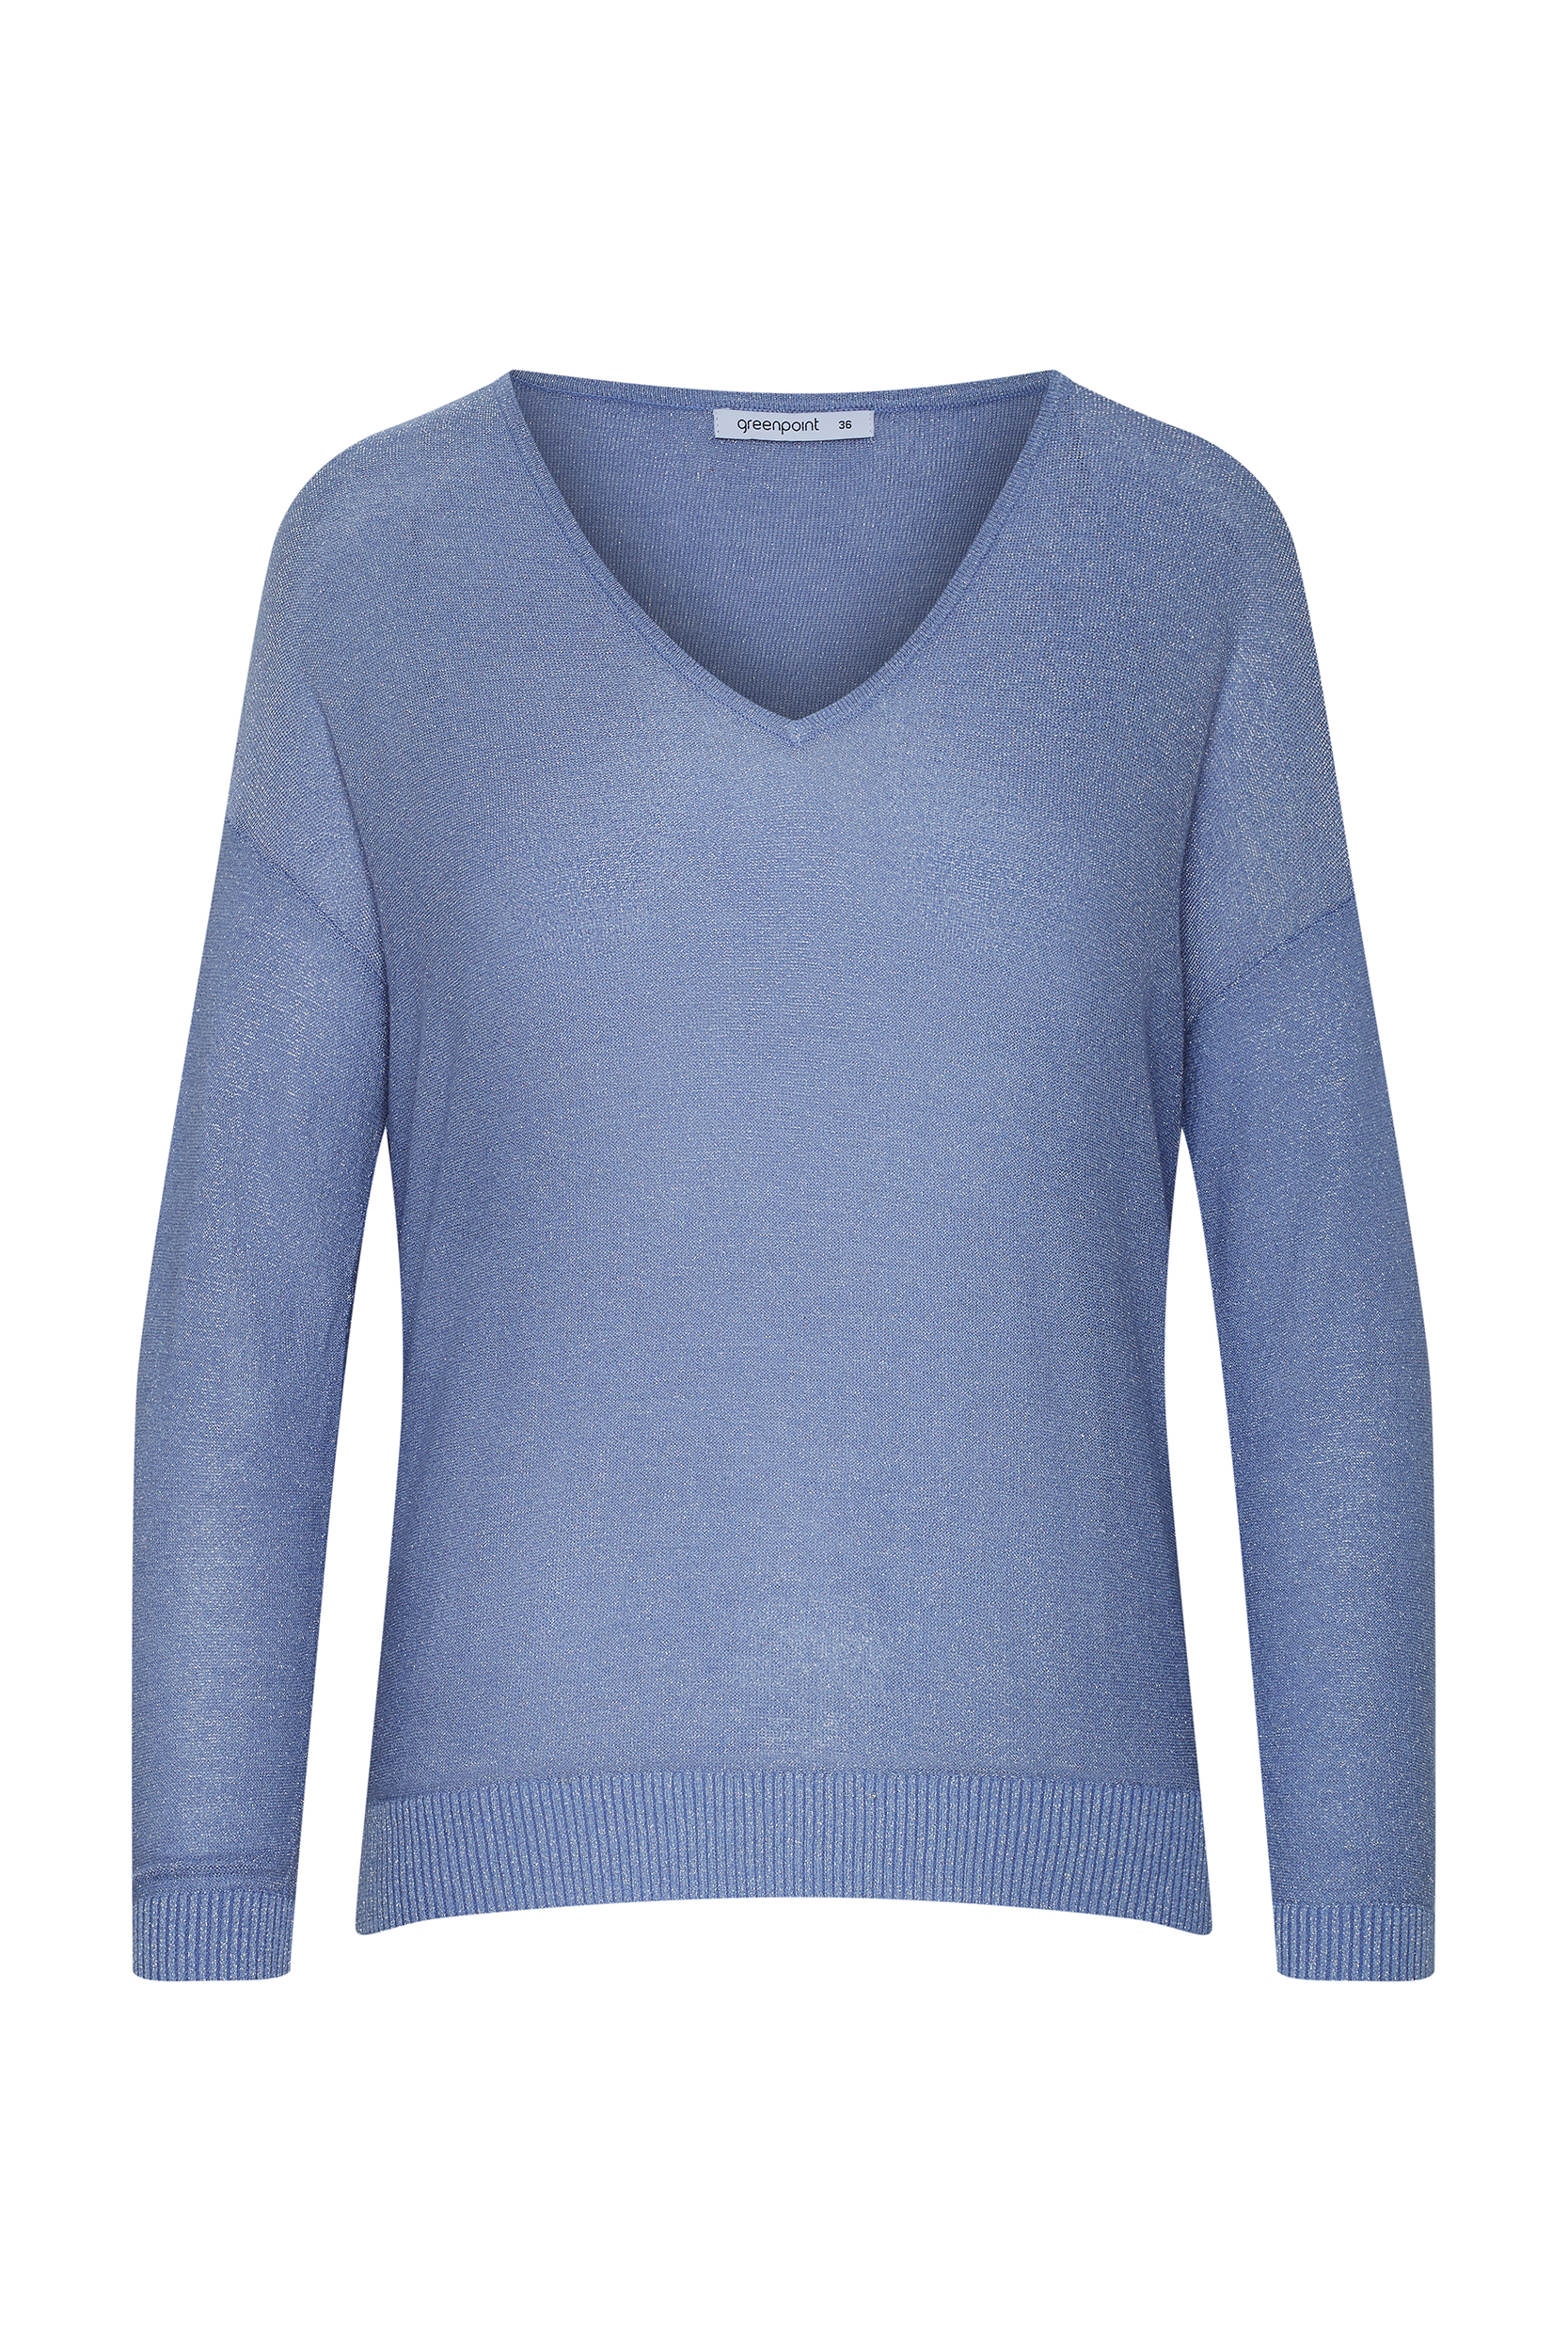 Błękitny sweter z błyszczącą nitką